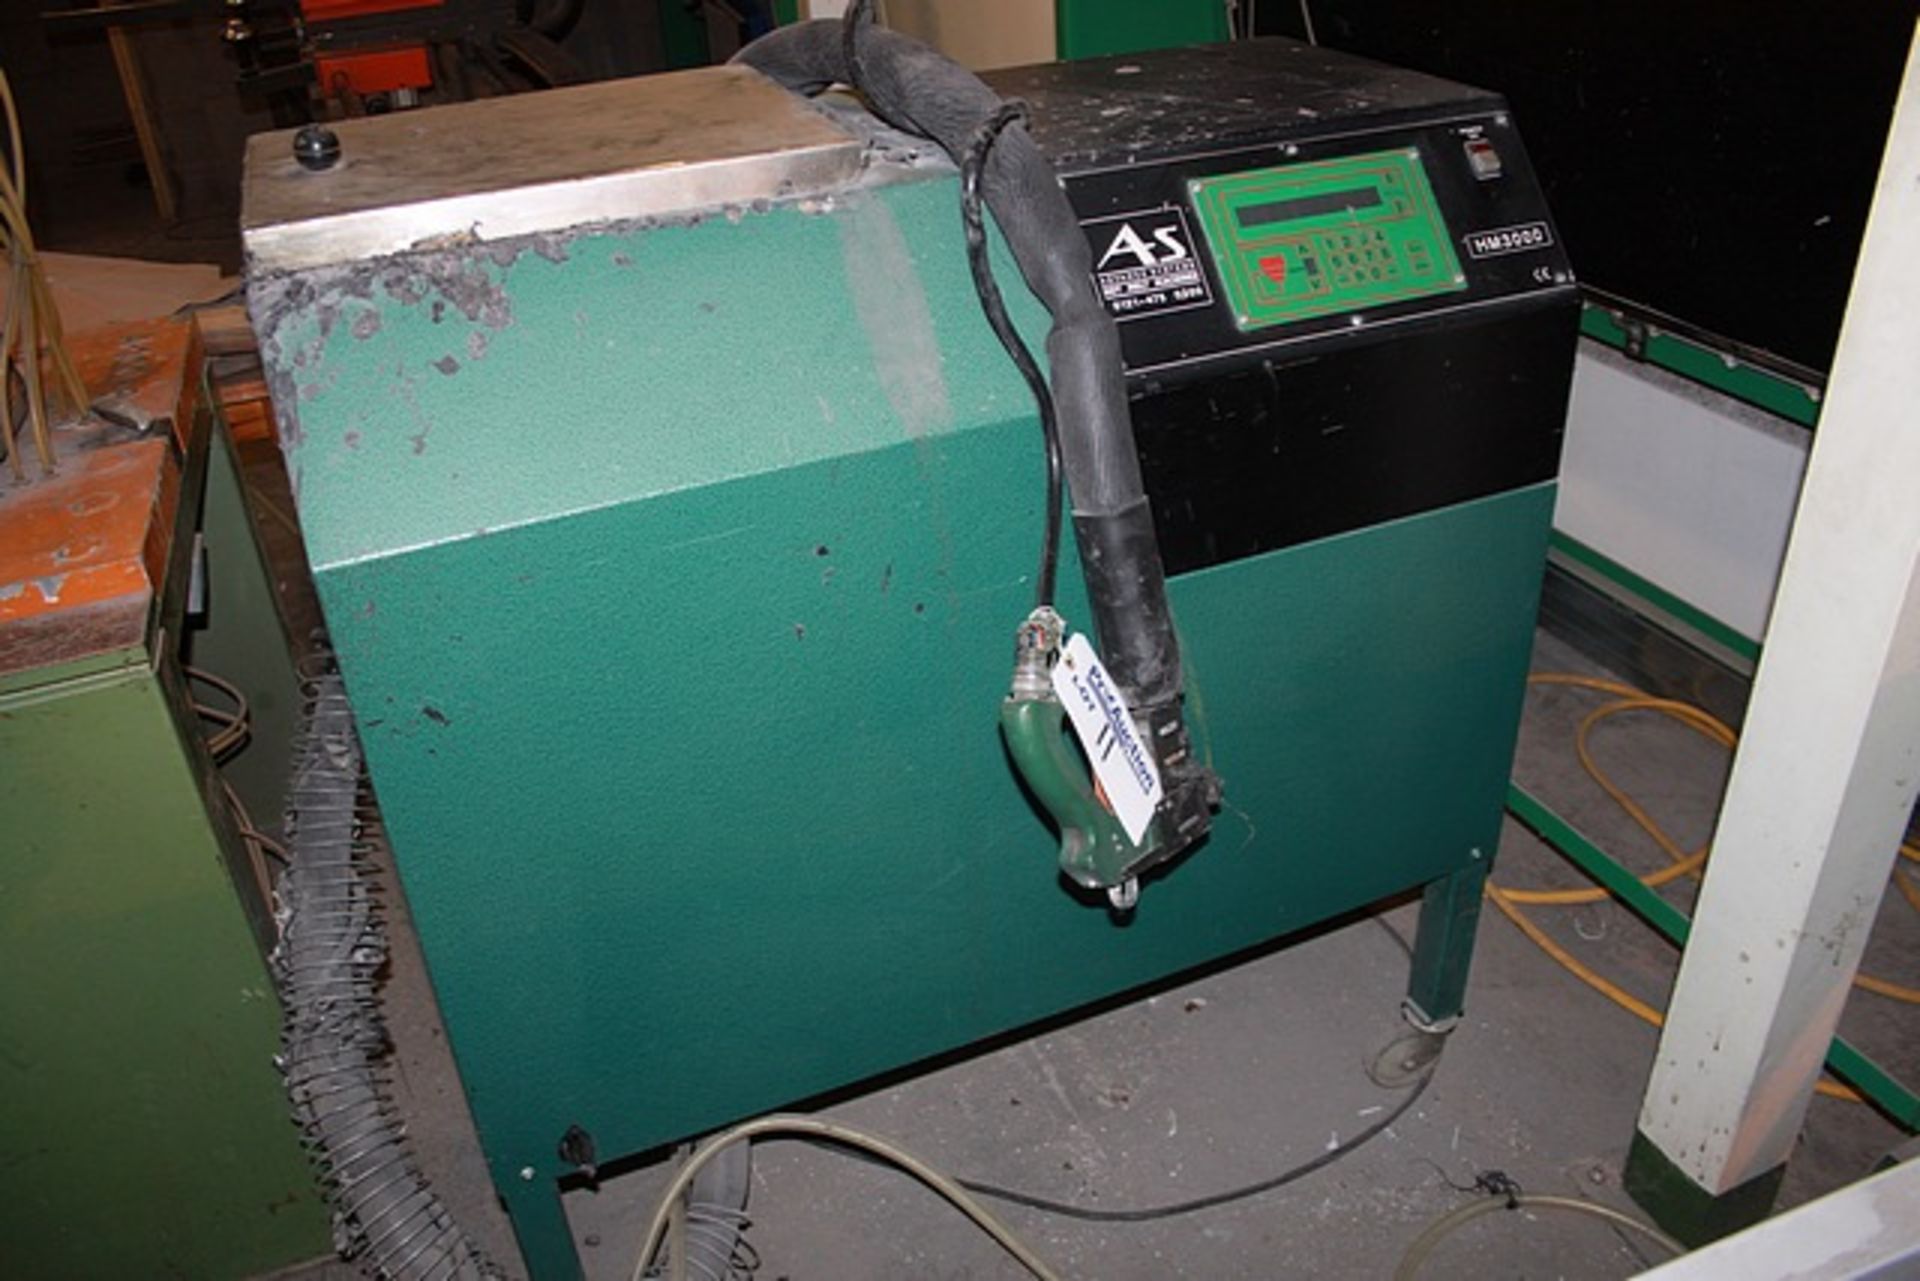 Advance System HM3000 hot melt machine average production: 2000 units/week hopper capacity:60kg - Image 2 of 2